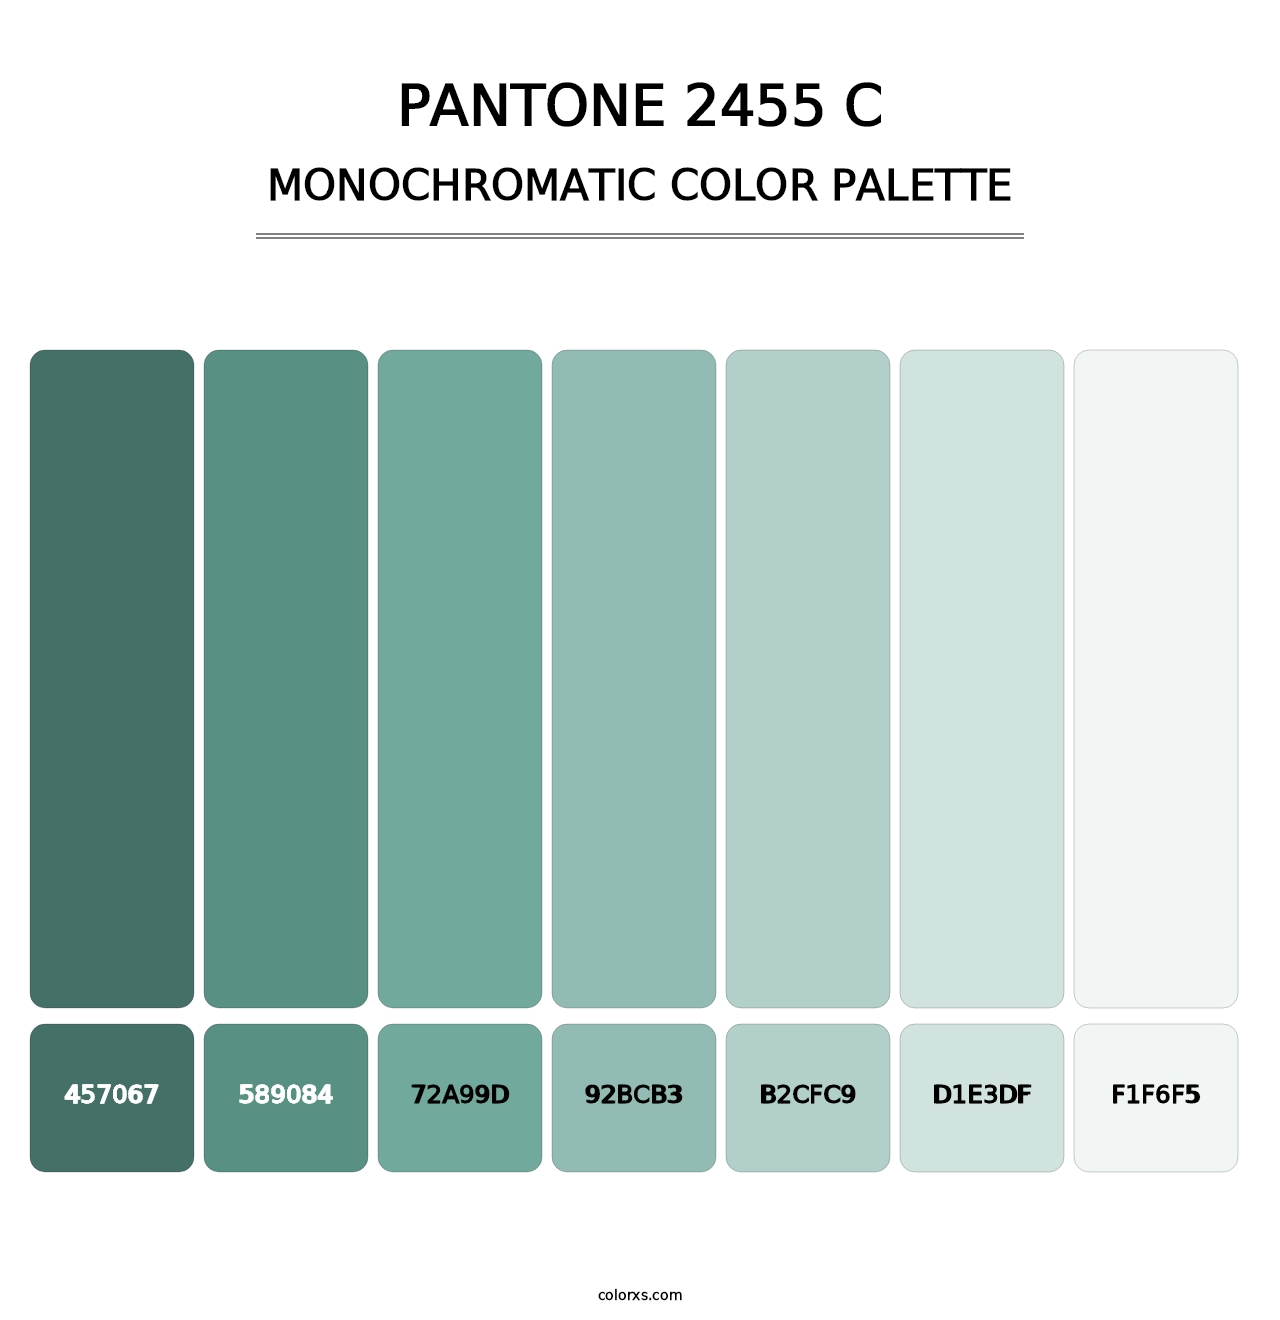 PANTONE 2455 C - Monochromatic Color Palette